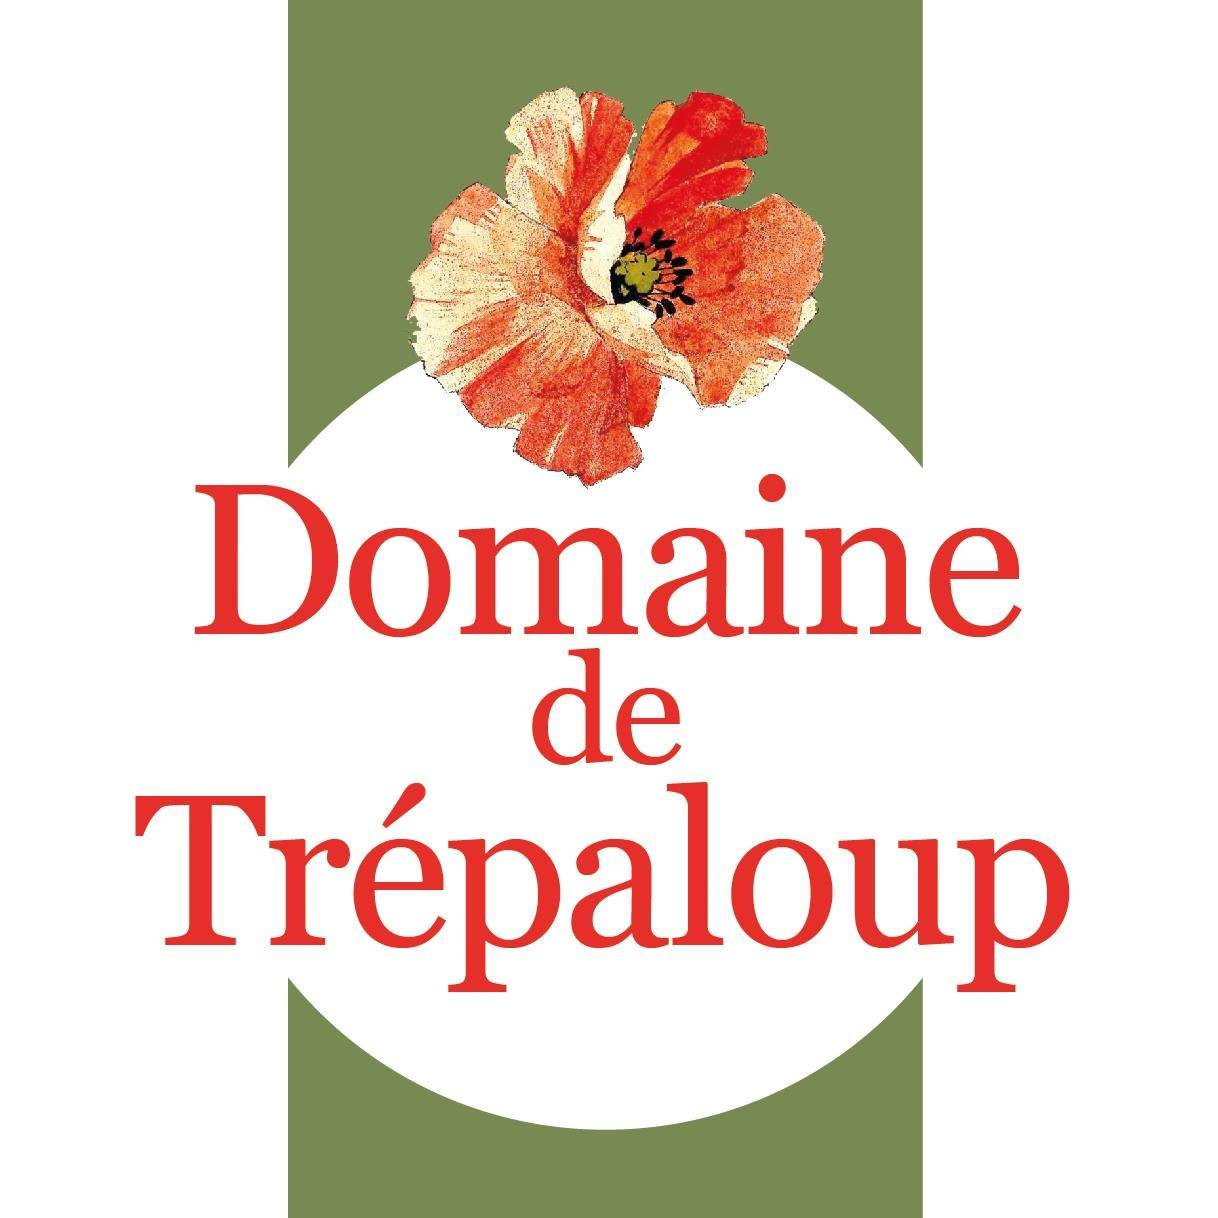 Domaine de Trépaloup